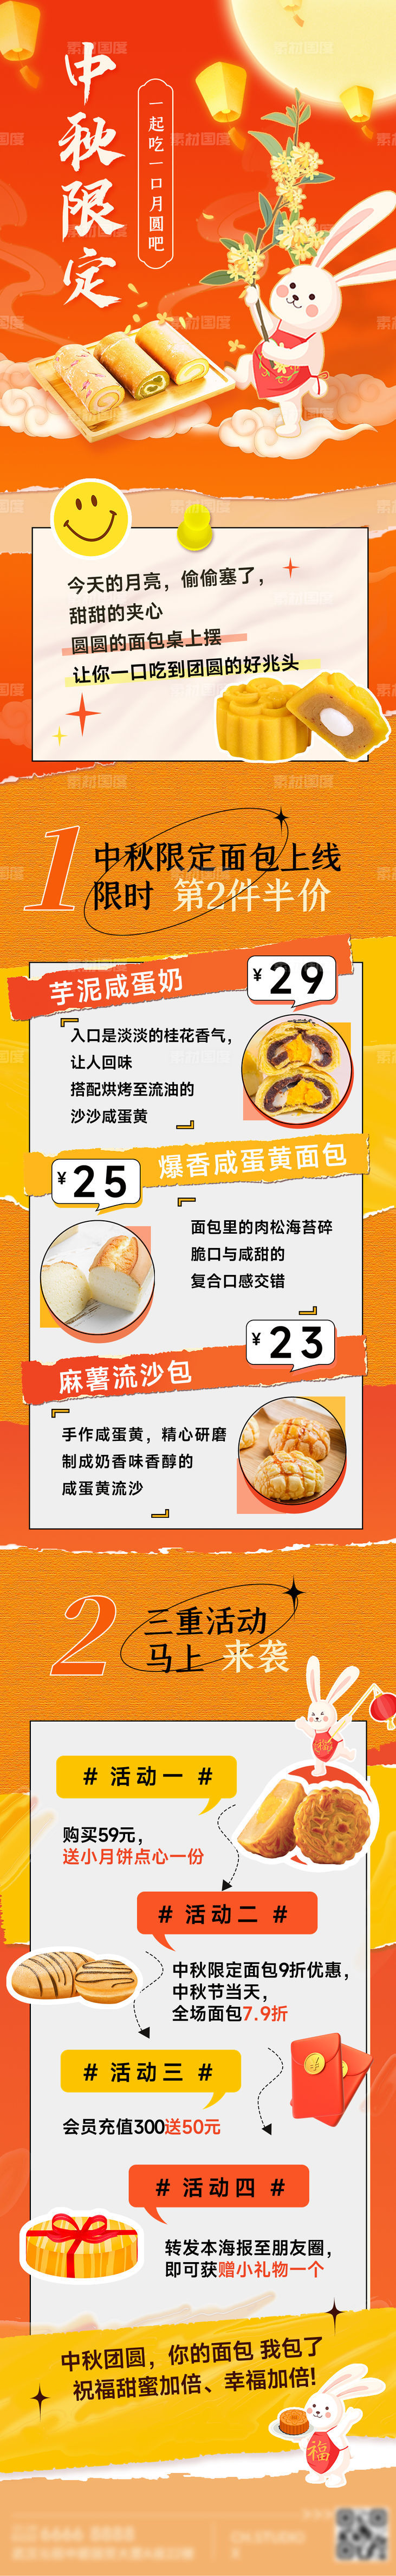 中秋节餐饮美食烘焙节日营销宣传文章长图